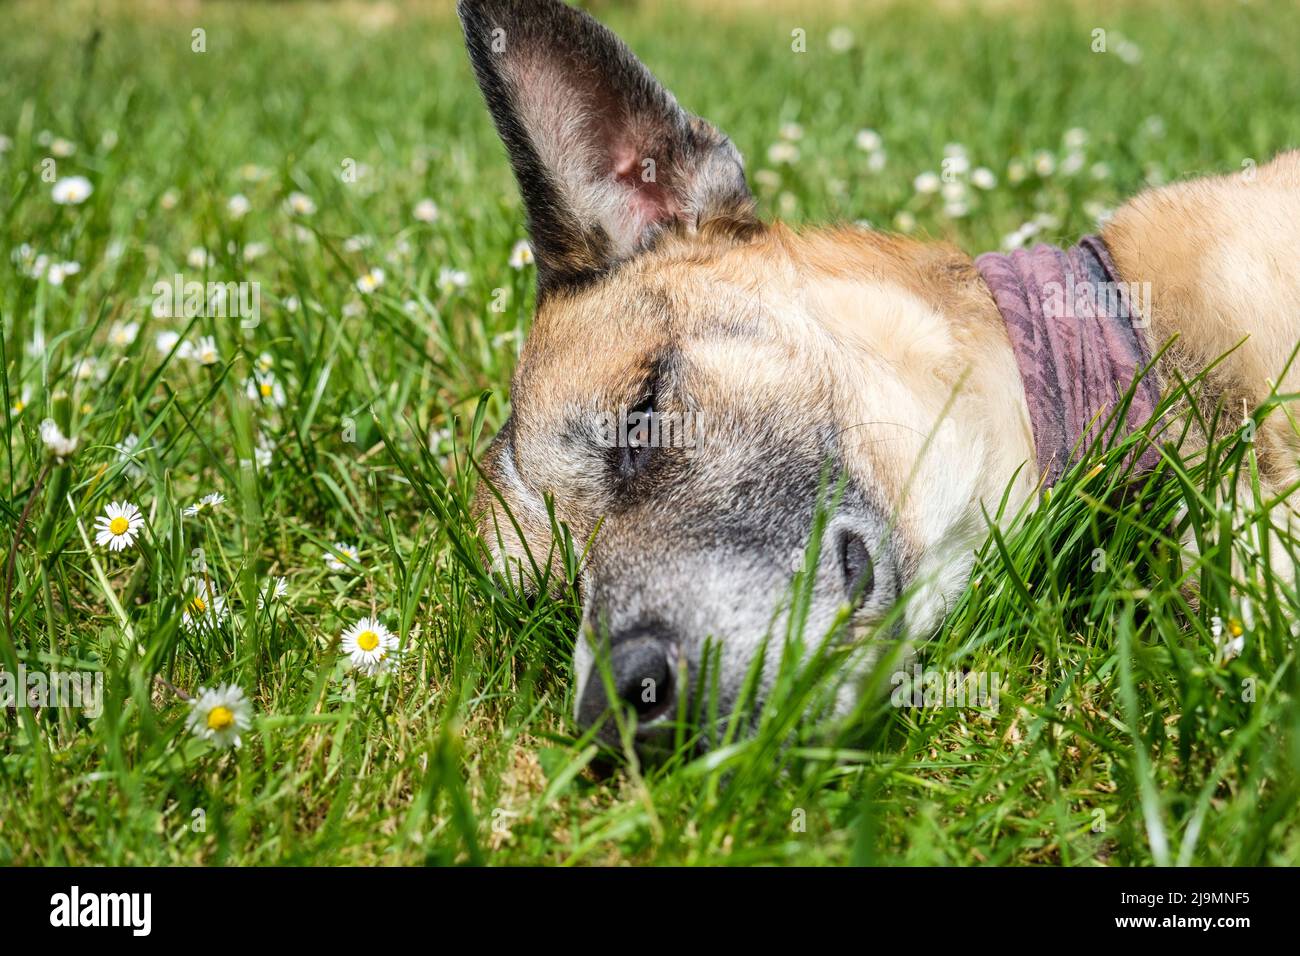 Cane addormentato in erba aprendo un occhio per guardare chi è intorno | Chien batard endormi sur le gazon d'un jardin ouvrant un oeil pour voir qui s'approche Foto Stock